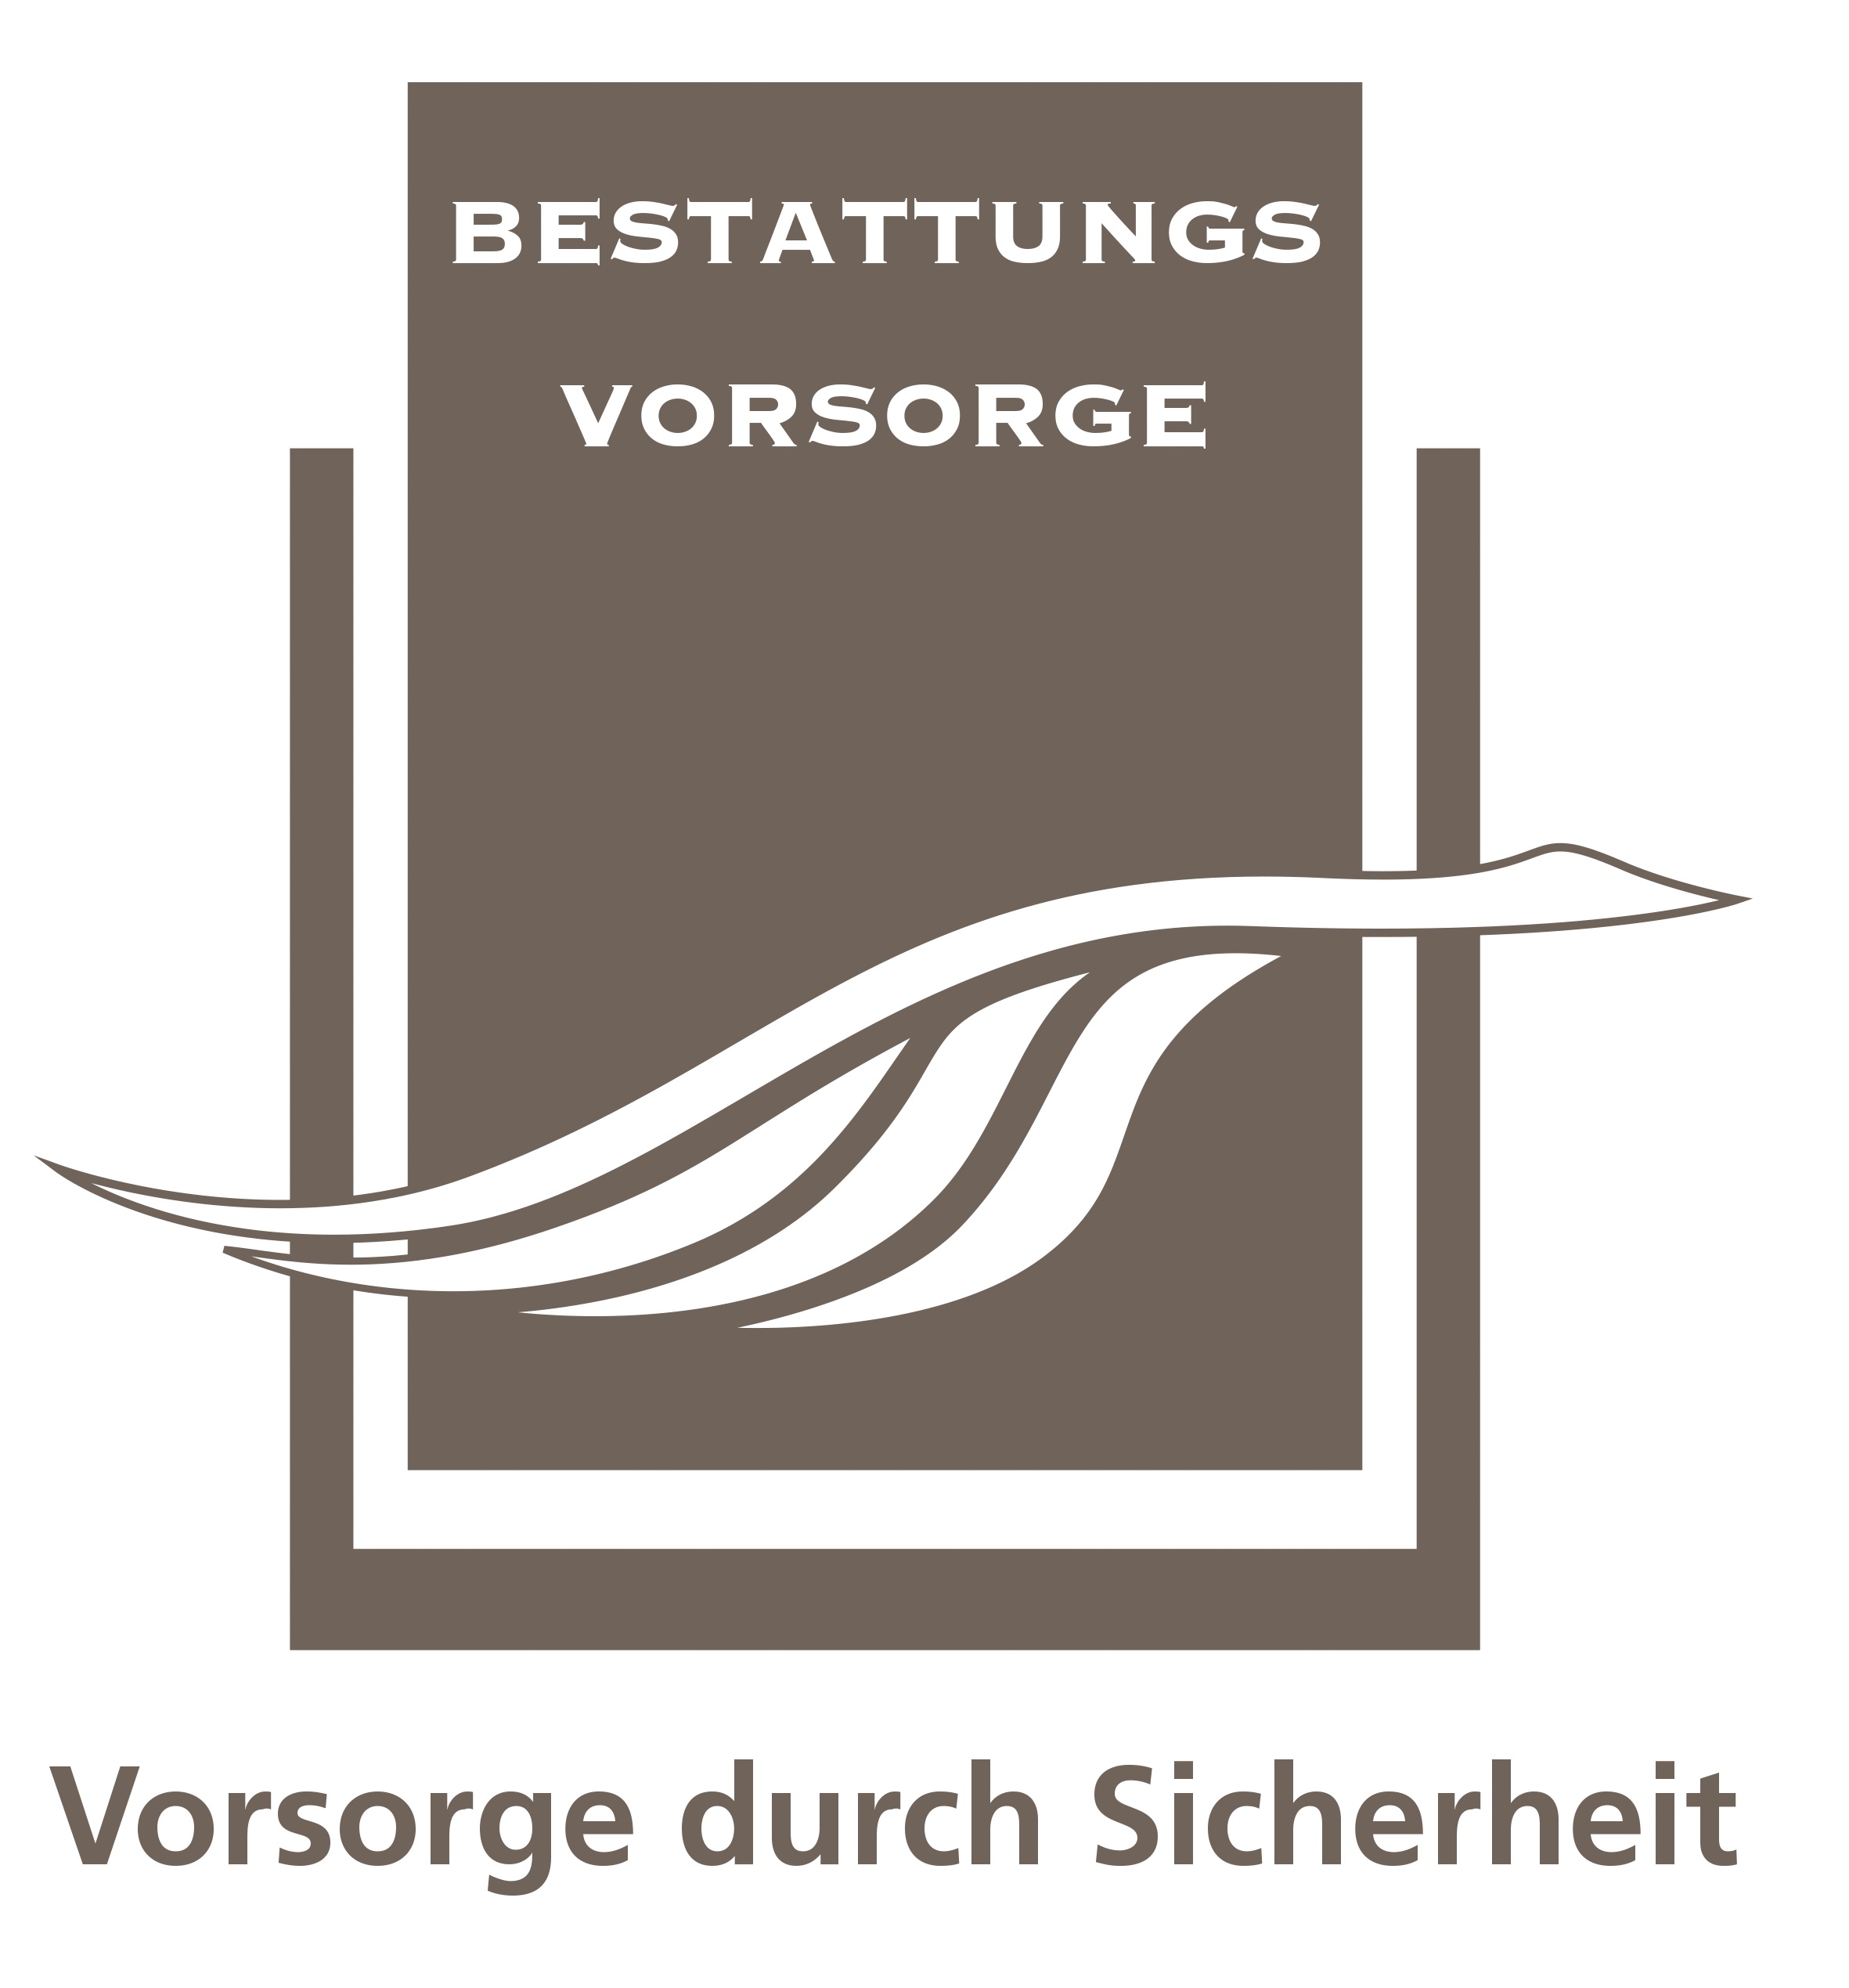 Bestattungsvorsorge Logo